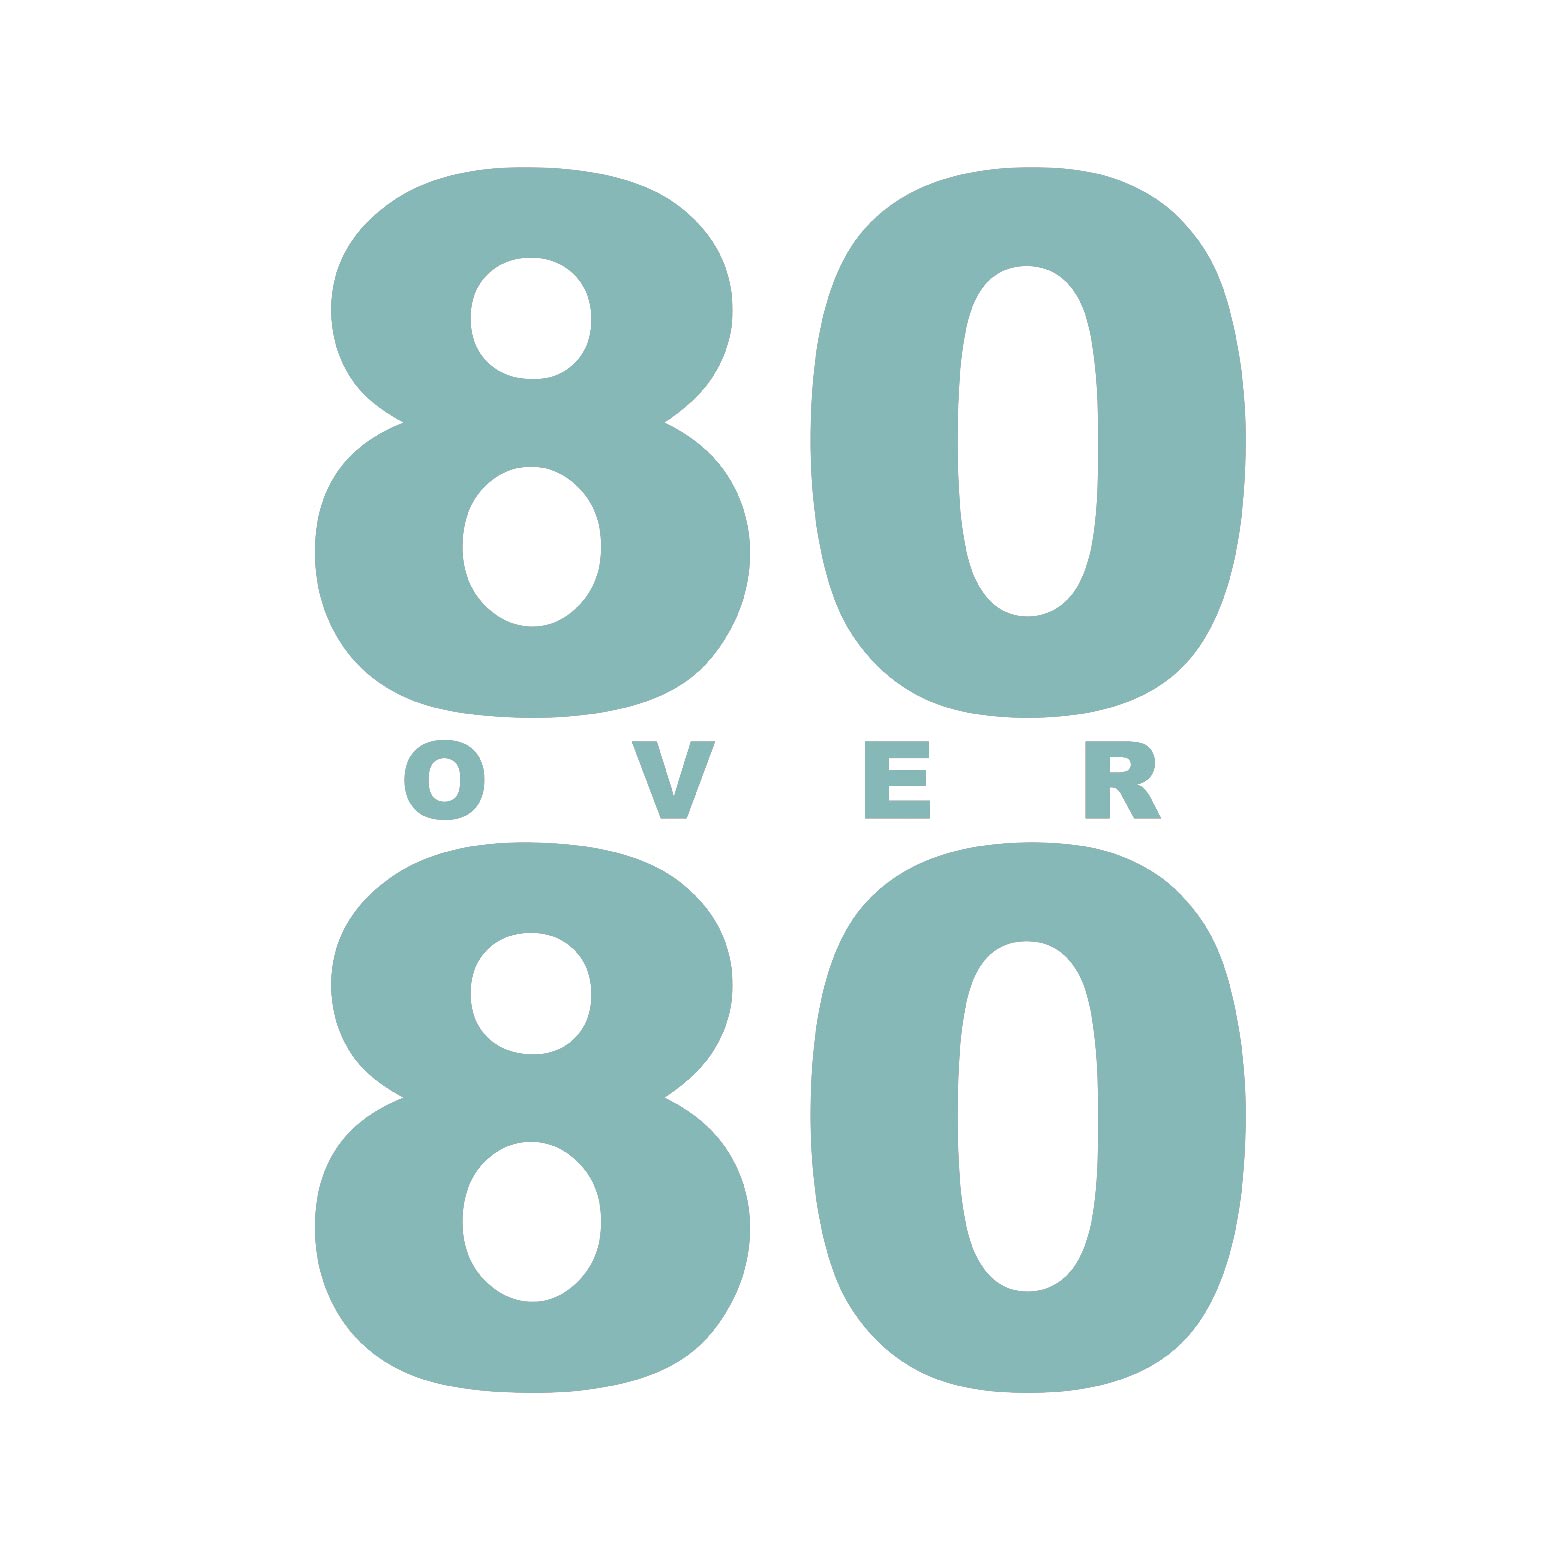 80 Over 80 logo